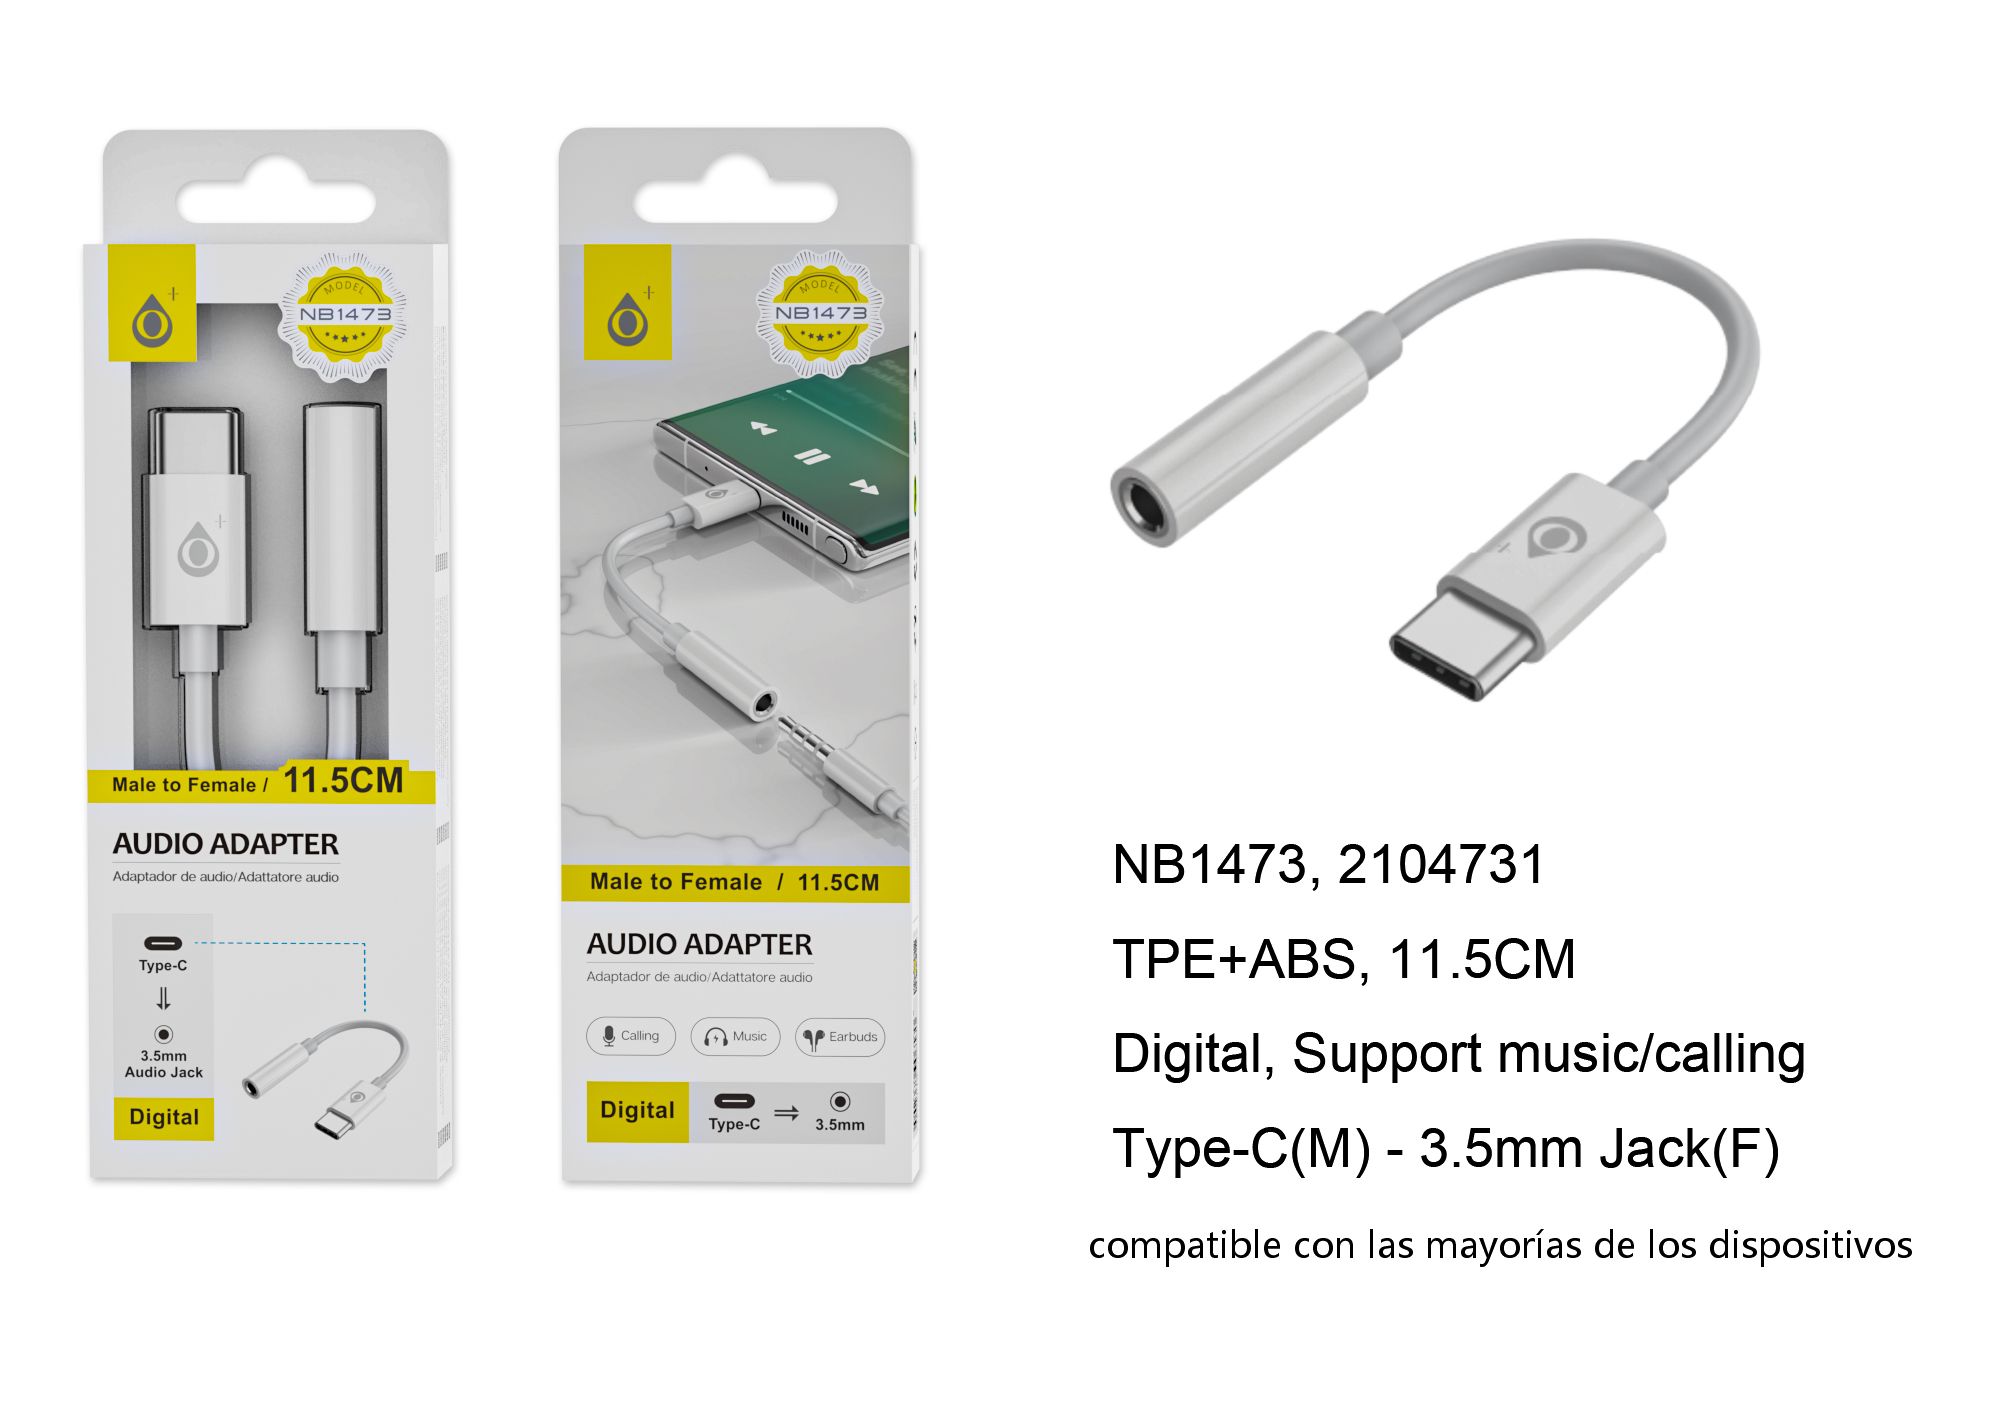 NB1473 BL Adaptador de Audio Type-C (Macho) a 3.5mm (Hembra), Con decodificador digital, Soporta musica y llamada, Blanco